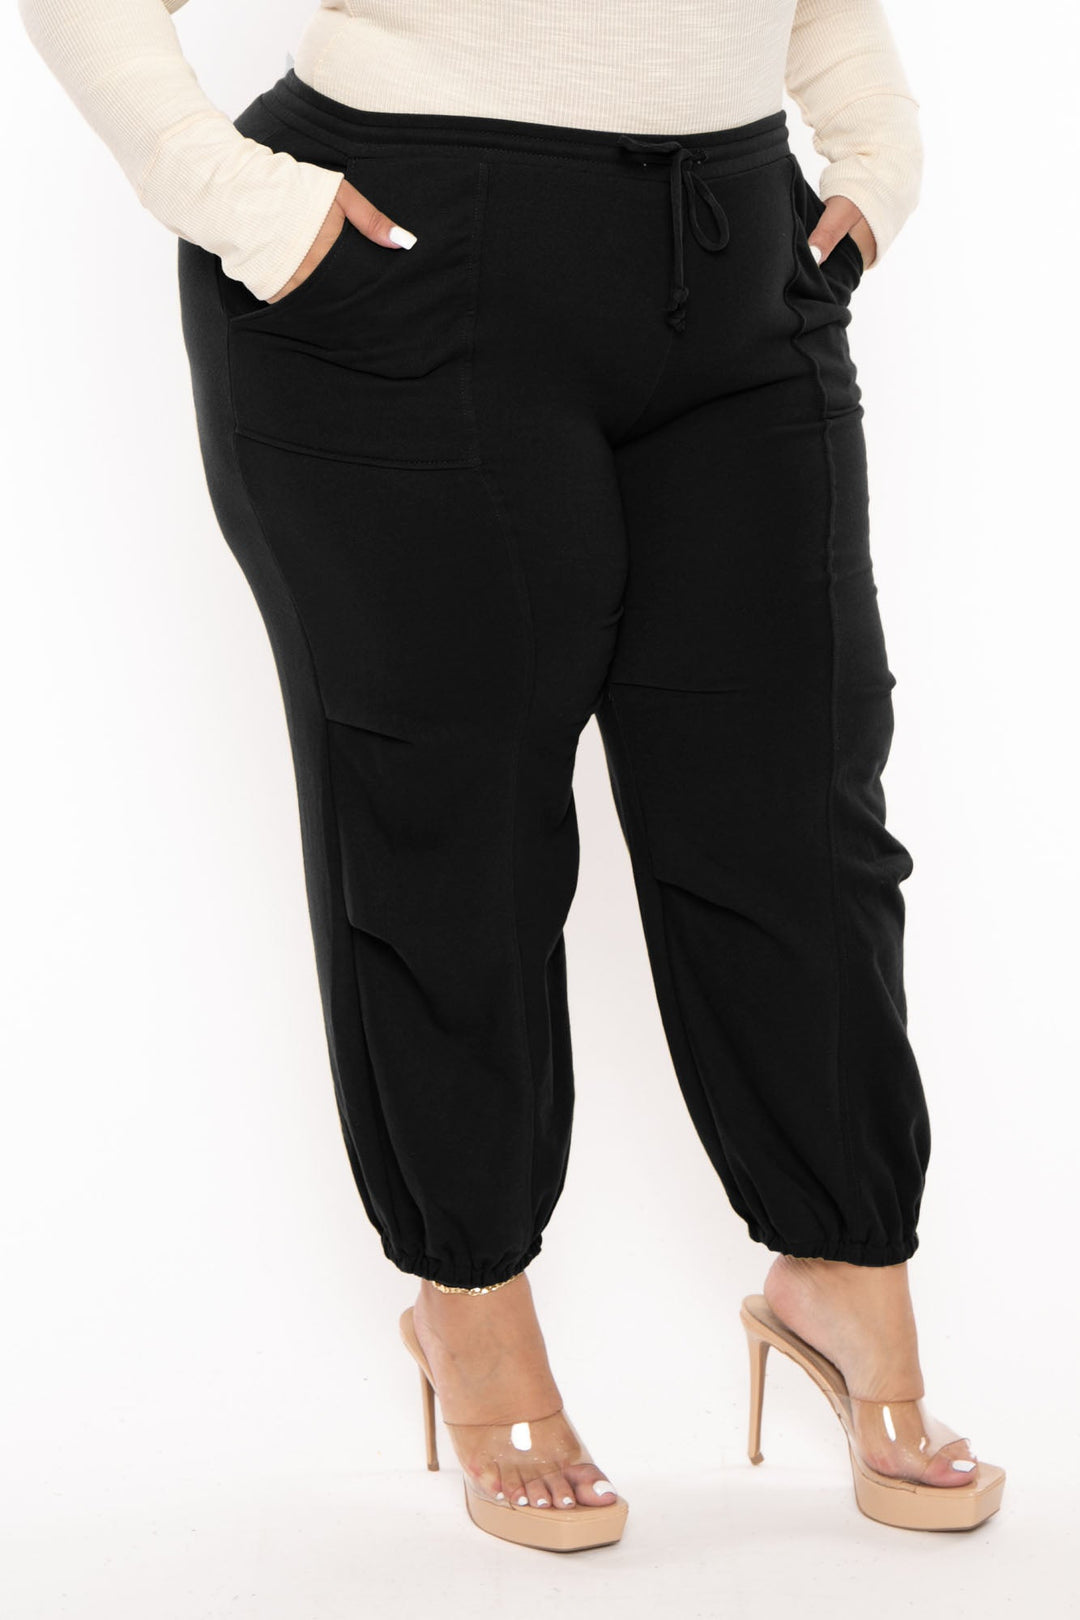 CULTURE CODE Pants Plus Size Cargo Jogger Sweatpants - Black